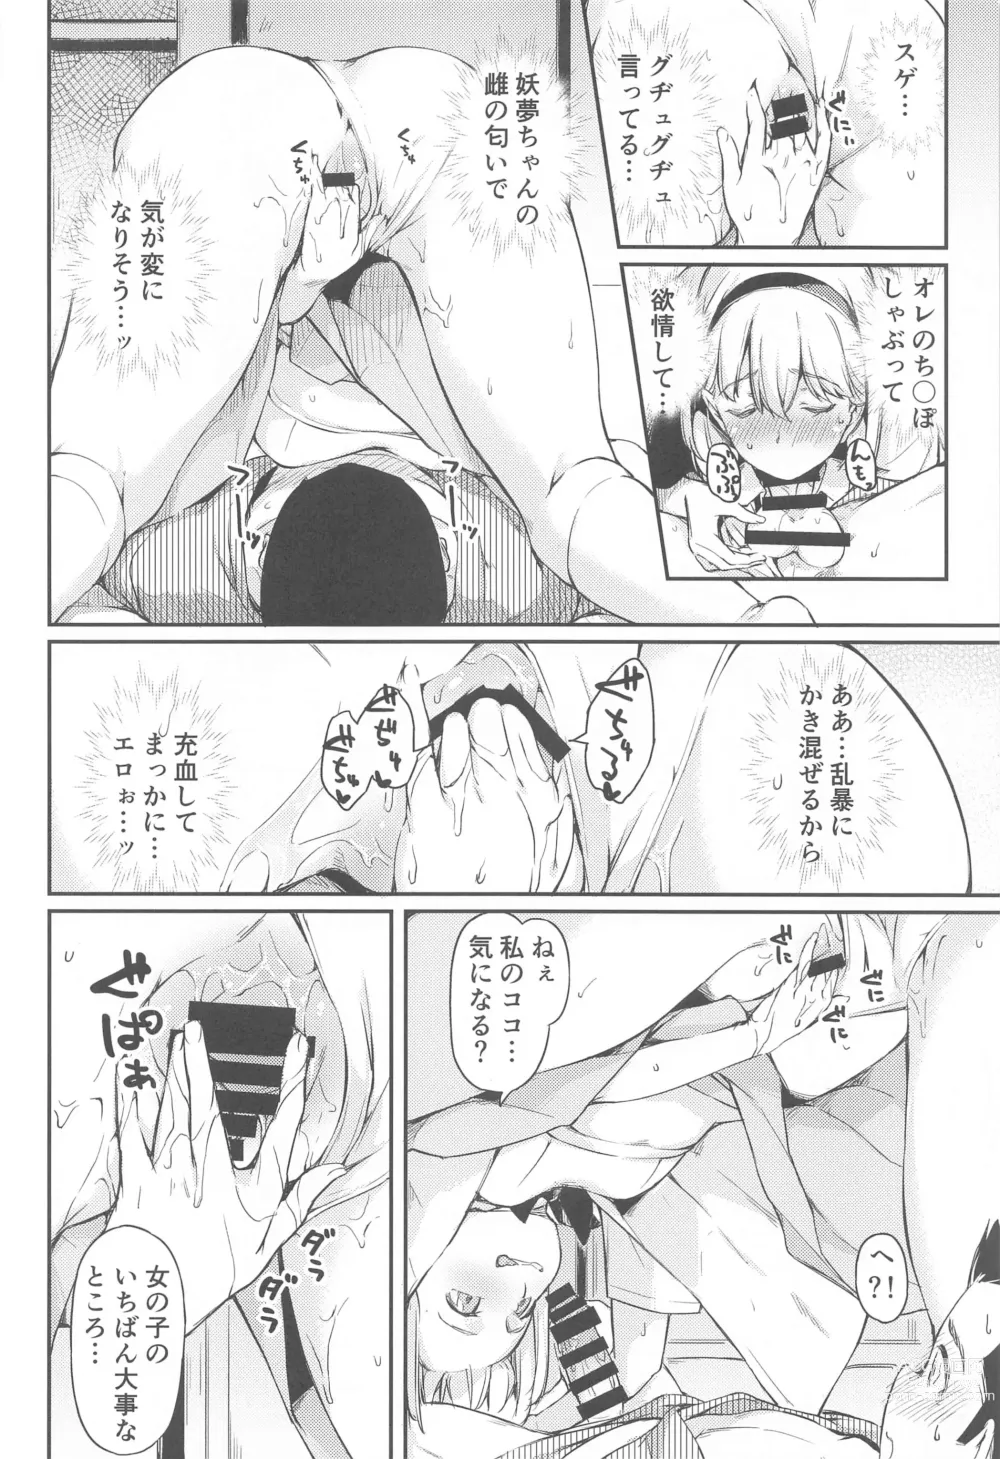 Page 9 of doujinshi Niwashi no Musume wa Minna ni Aisaretai.